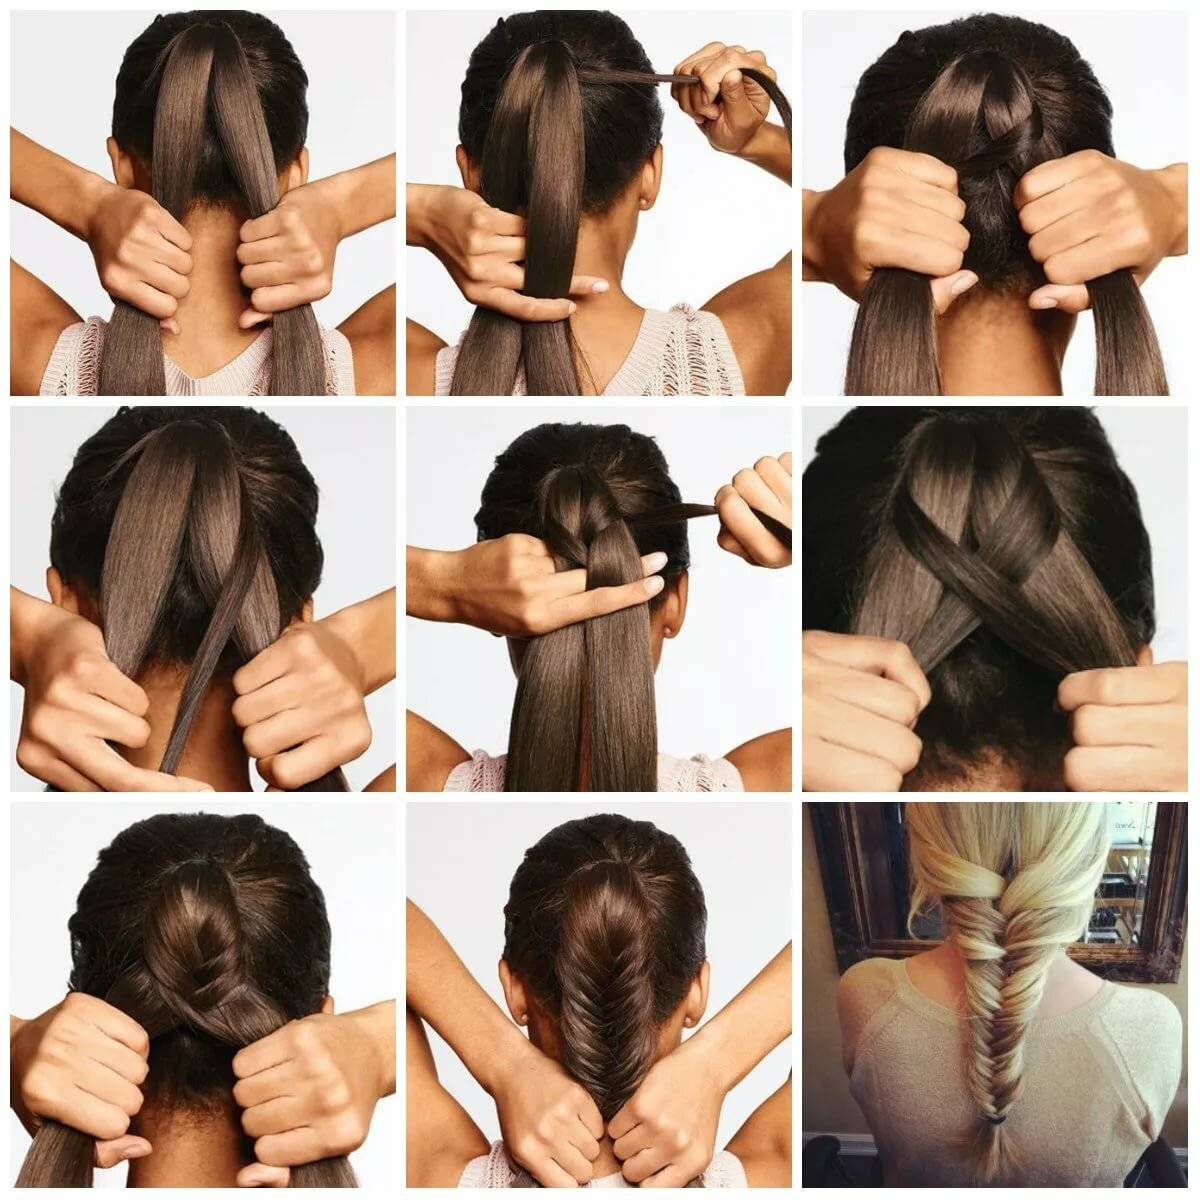 Как научиться плести косы самой себе на короткие волосы для начинающих